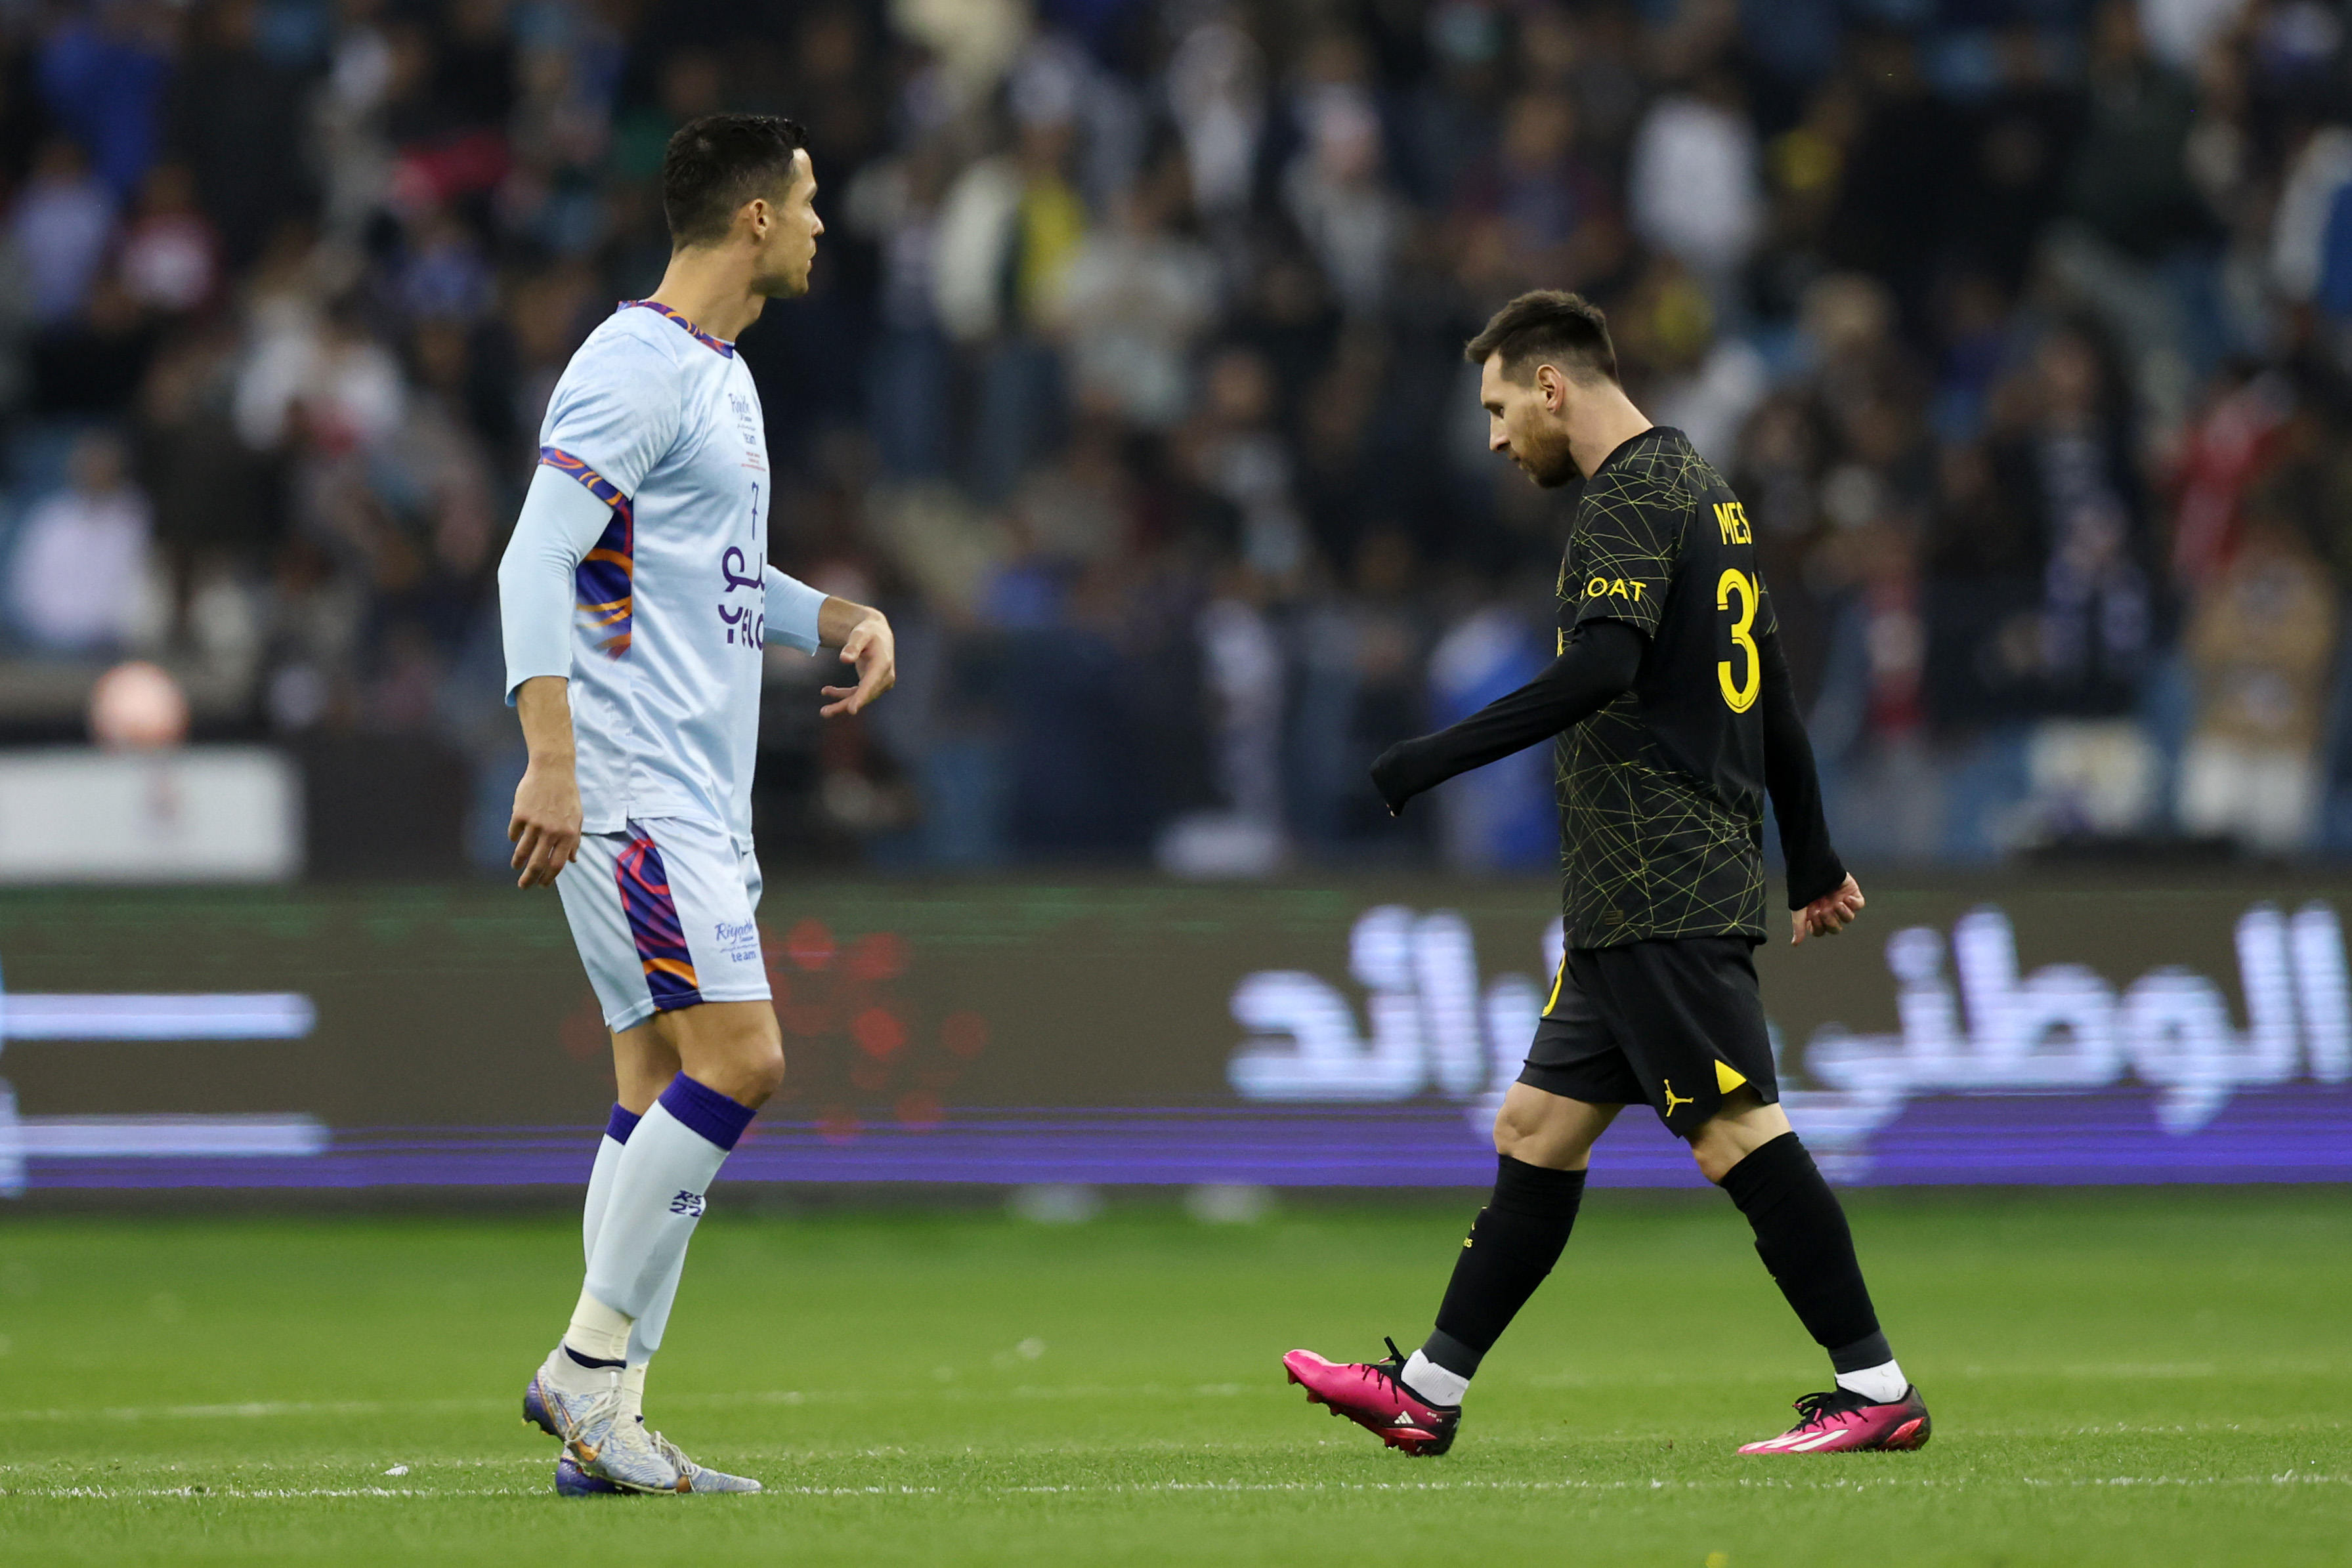 The last dance, il piano che mette insieme Messi e Ronaldo - Calciomercato